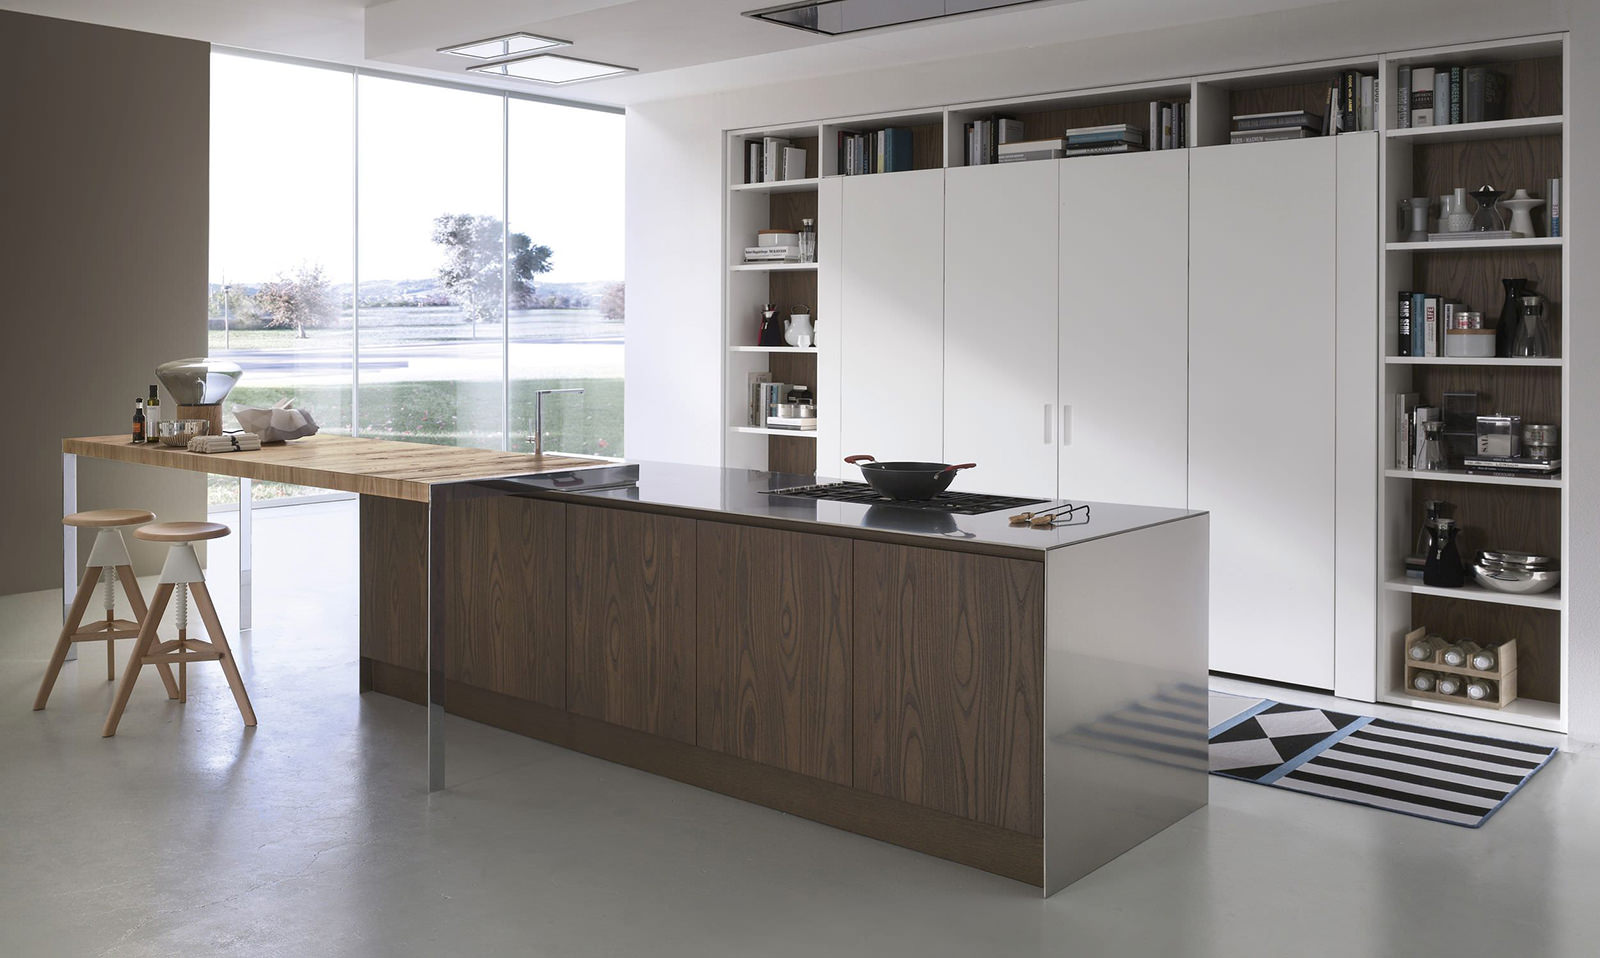 Бежевый, коричневый и белый цвета в интерьере кухни в стиле минимализм